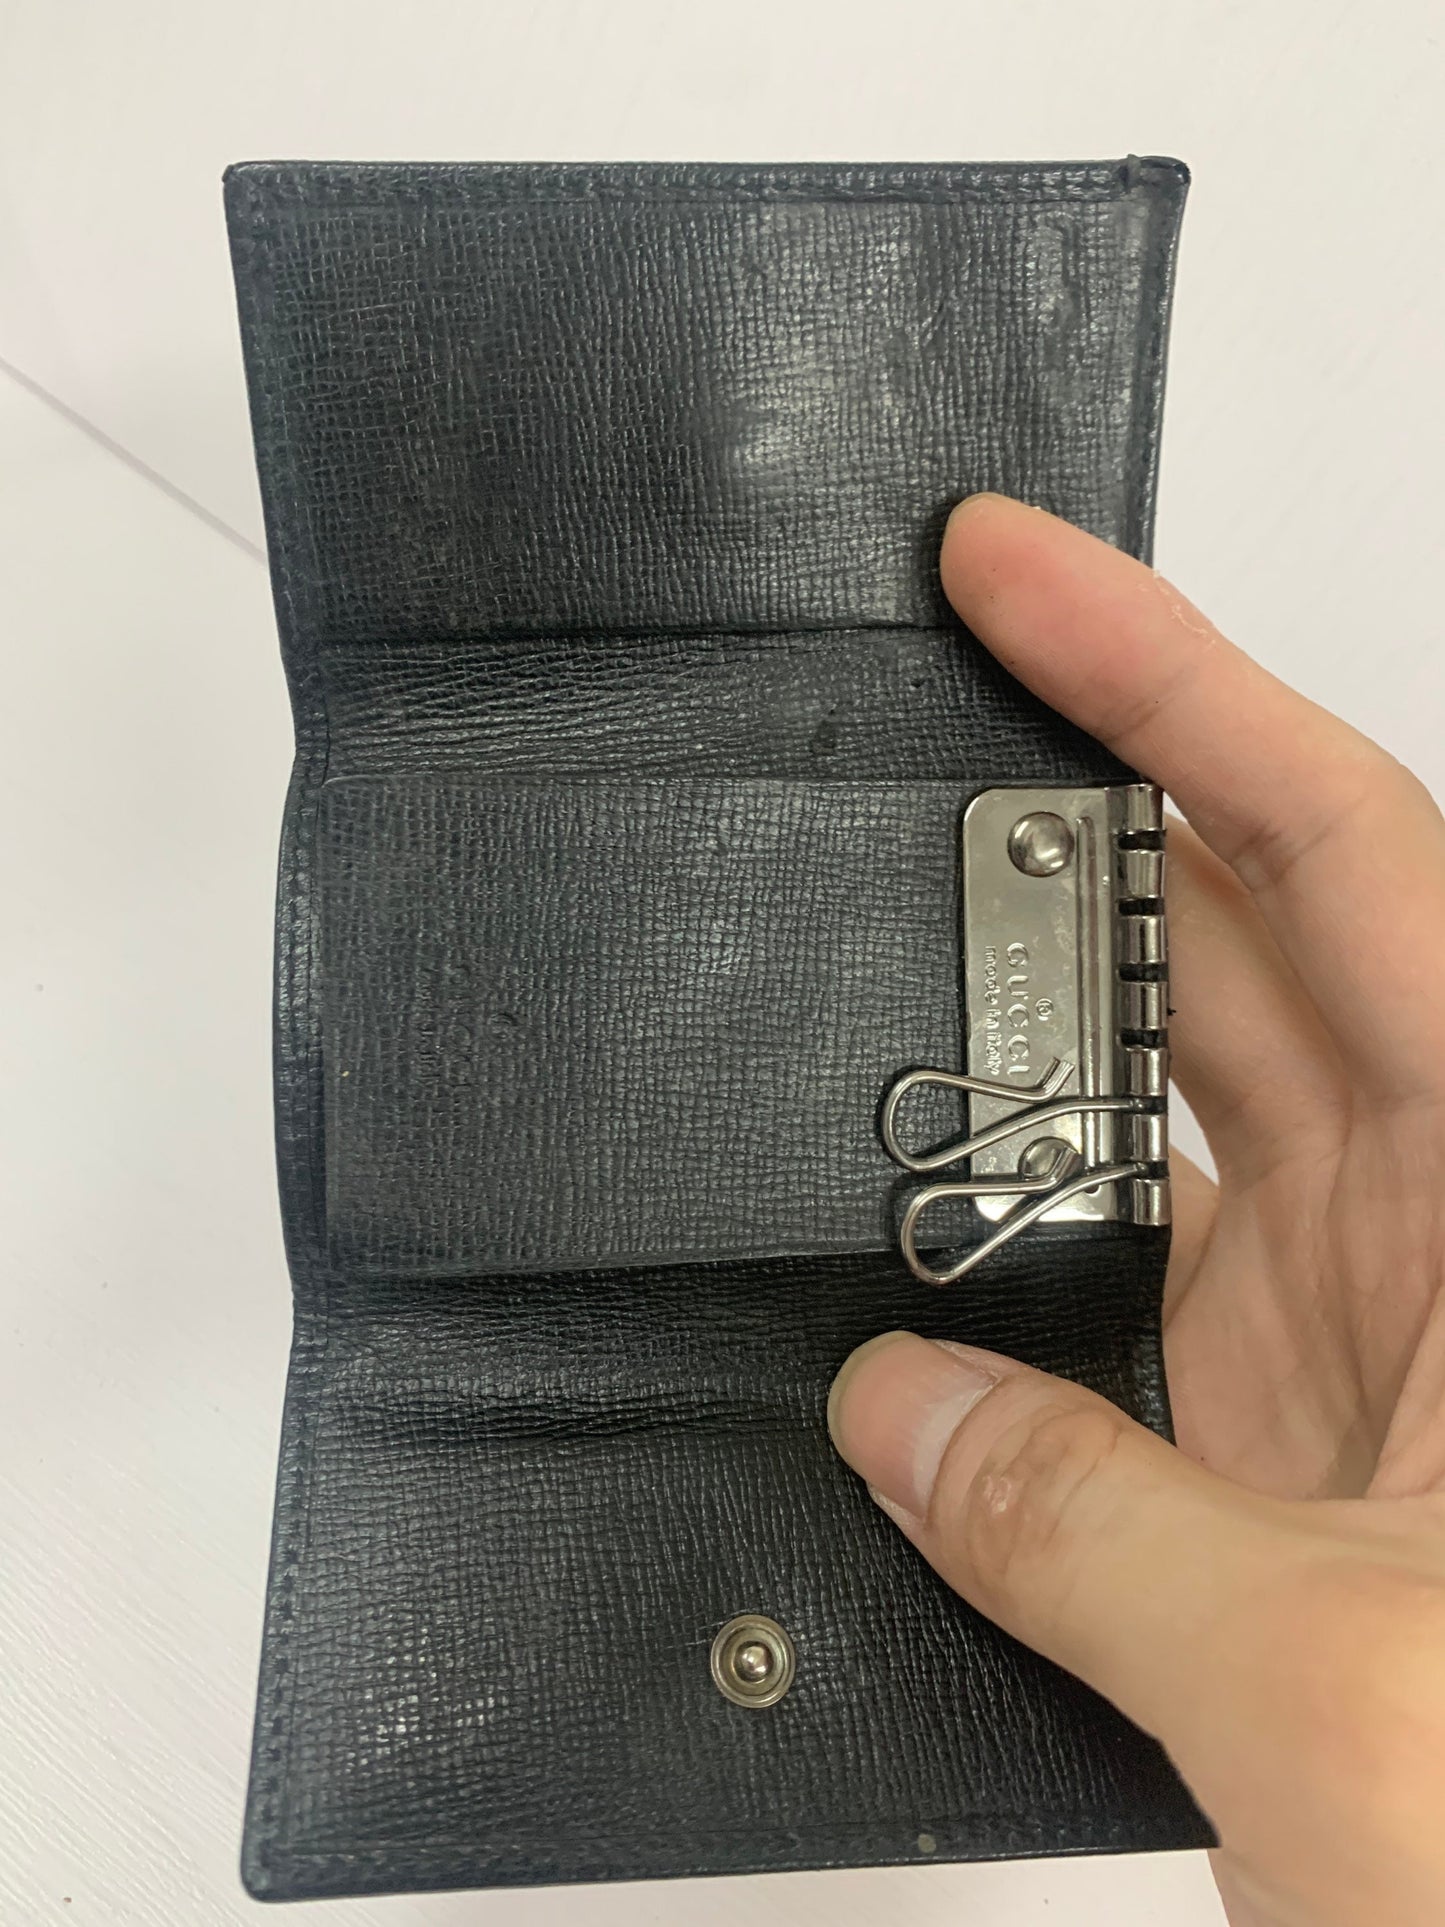 Gucci black key bag 9w x 6.5H cm (BBW 55)